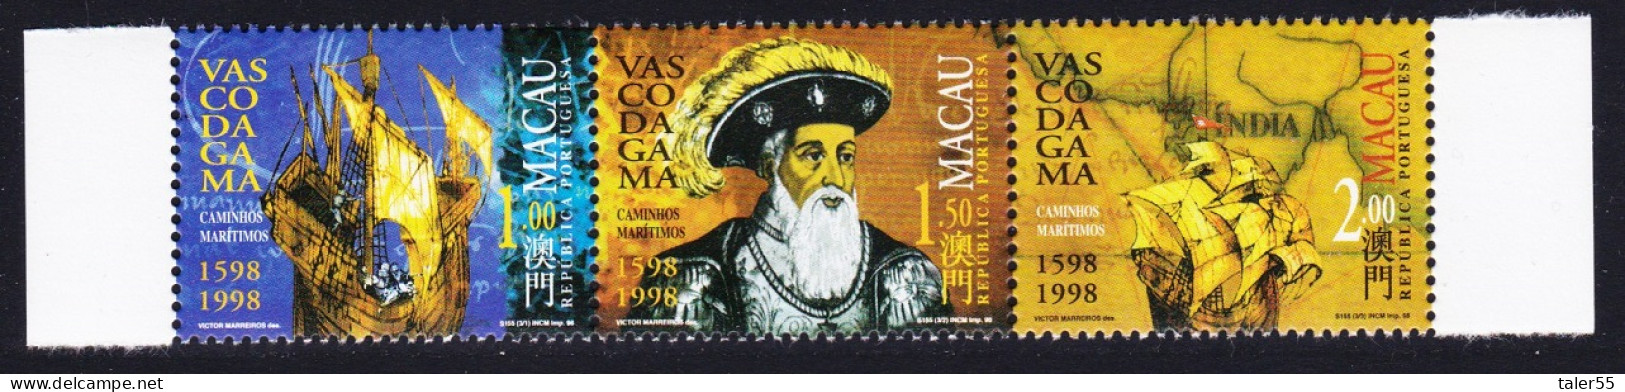 Macao Macau Vasco Da Gama ERROR '1598' Strip Of 3v 1998 MNH SG#1040-1042 Sc#926-928 - Nuevos